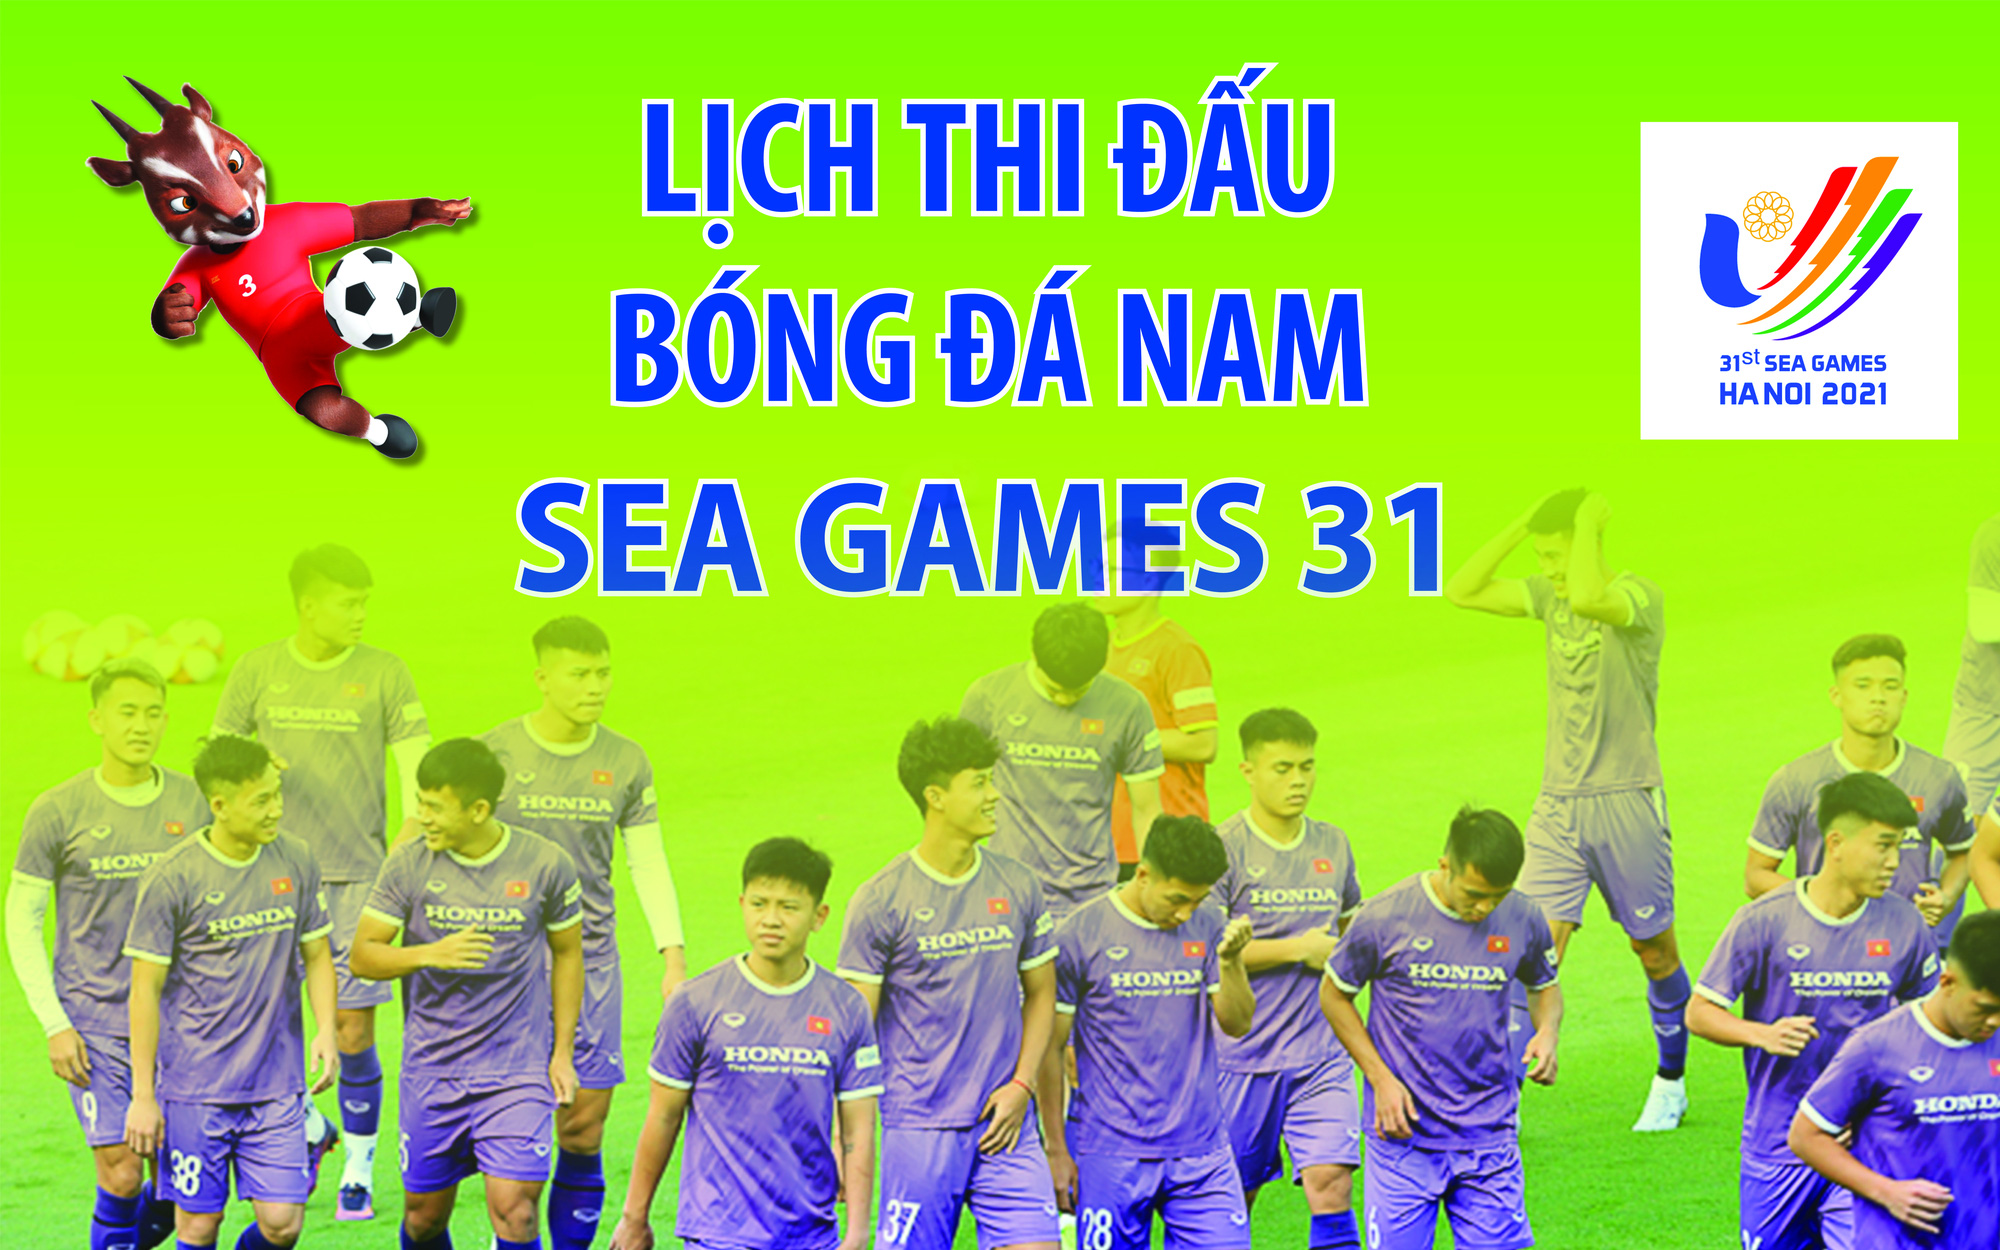 Ngày, giờ, địa điểm thi đấu môn bóng đá nam tại SEA Games 31